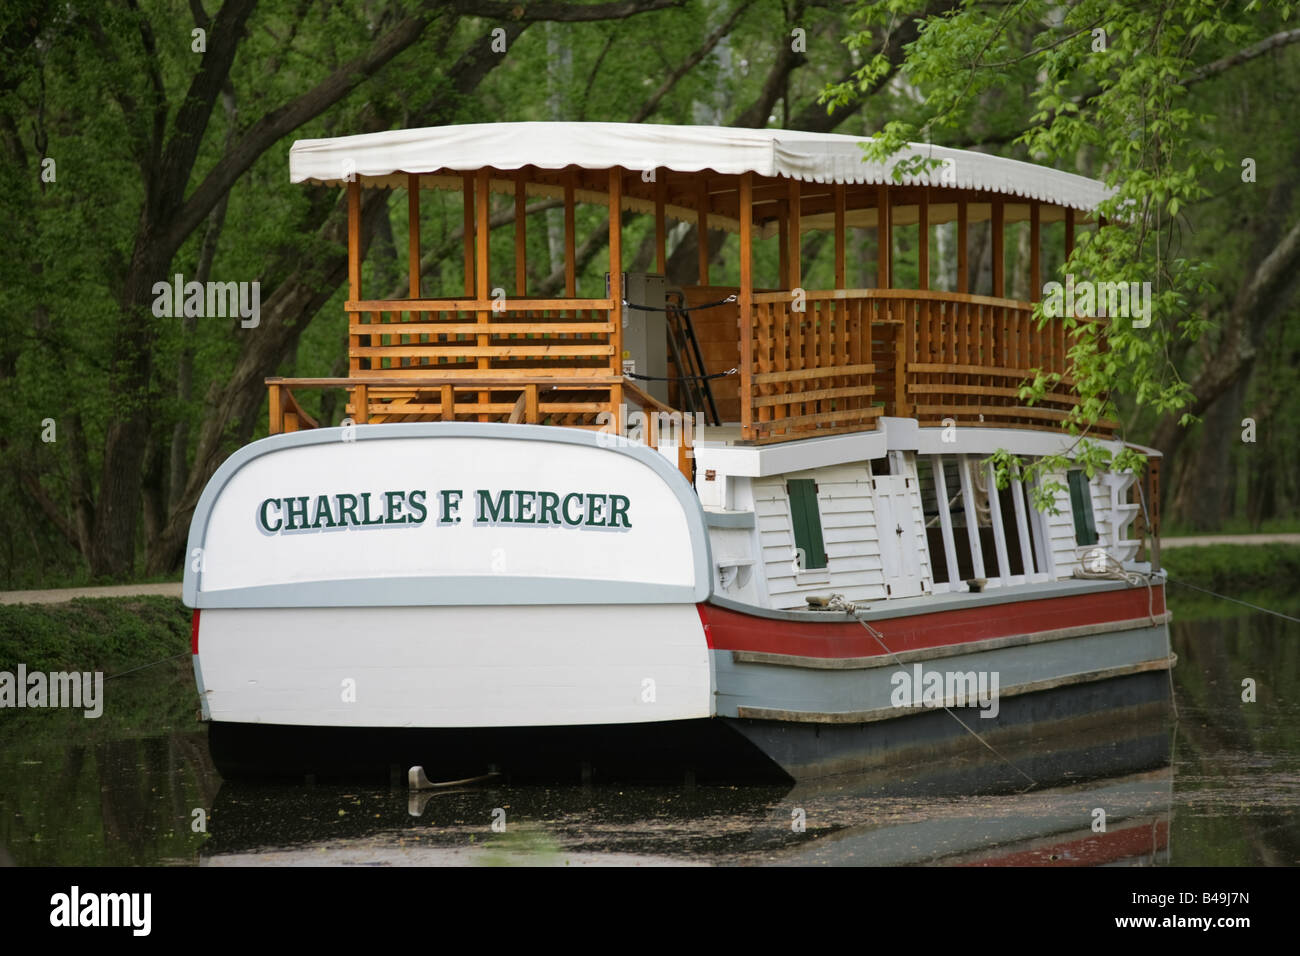 Le Charles F. Mercer, en aluminium à une réplique d'une mule-appelée canal ou packet boat transport de passagers sur le C&O Canal Banque D'Images